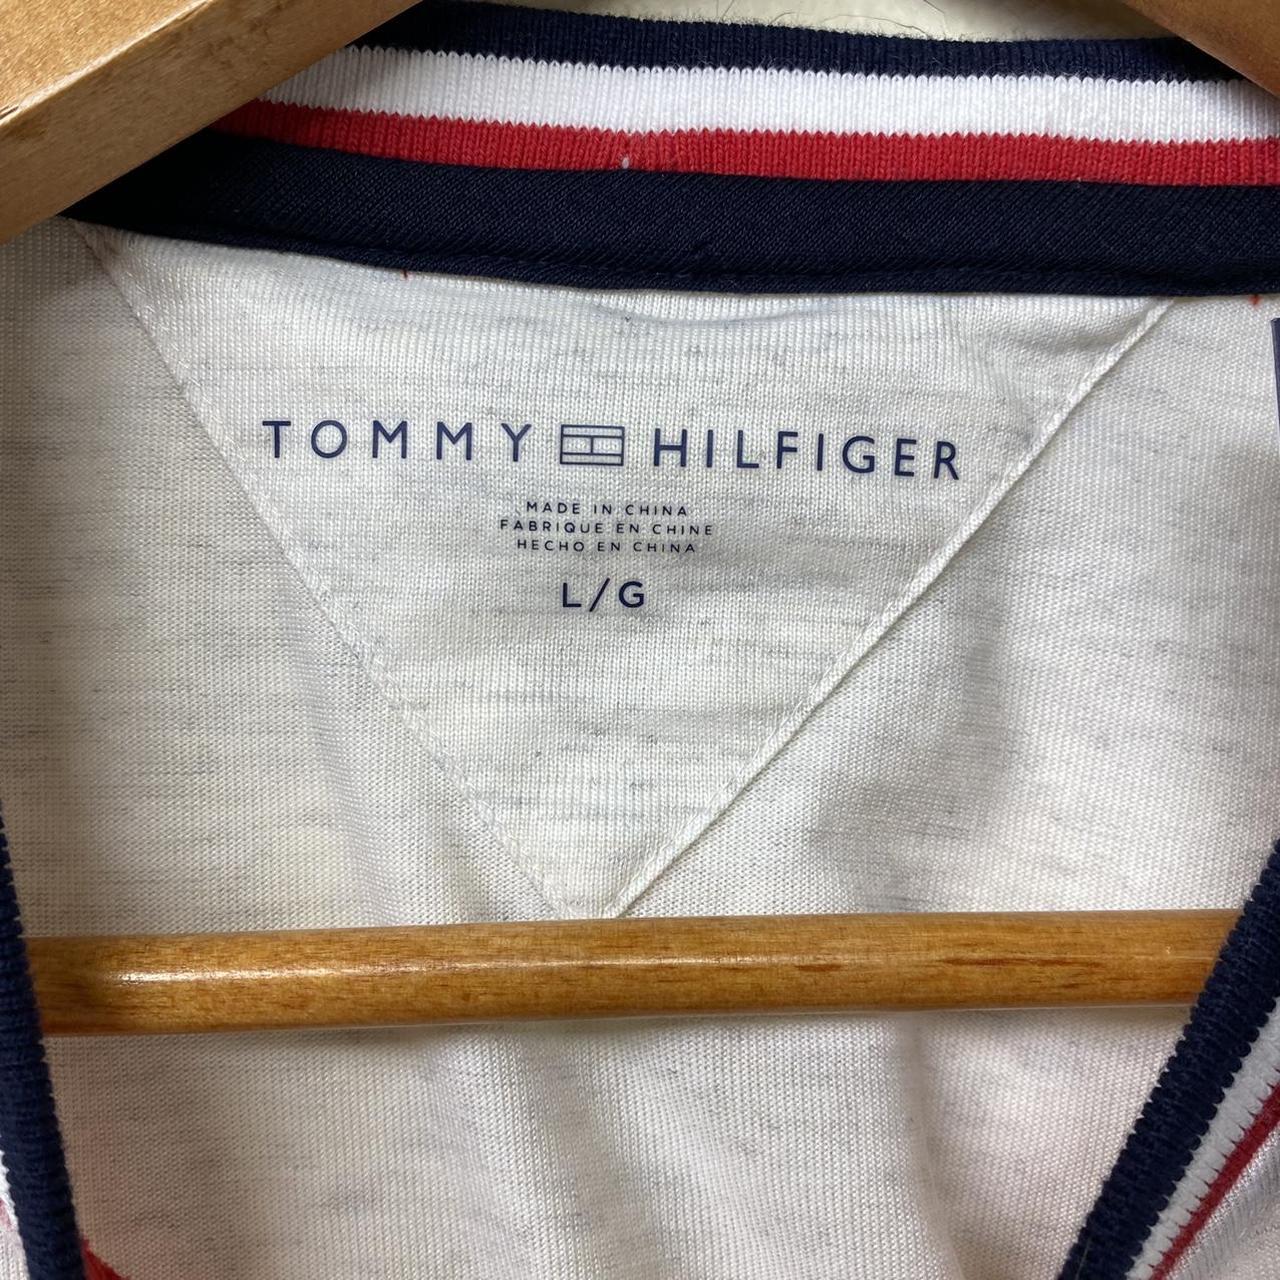 Tommy Hilfiger 85 Jersey T-shirt. Brand new, never... - Depop